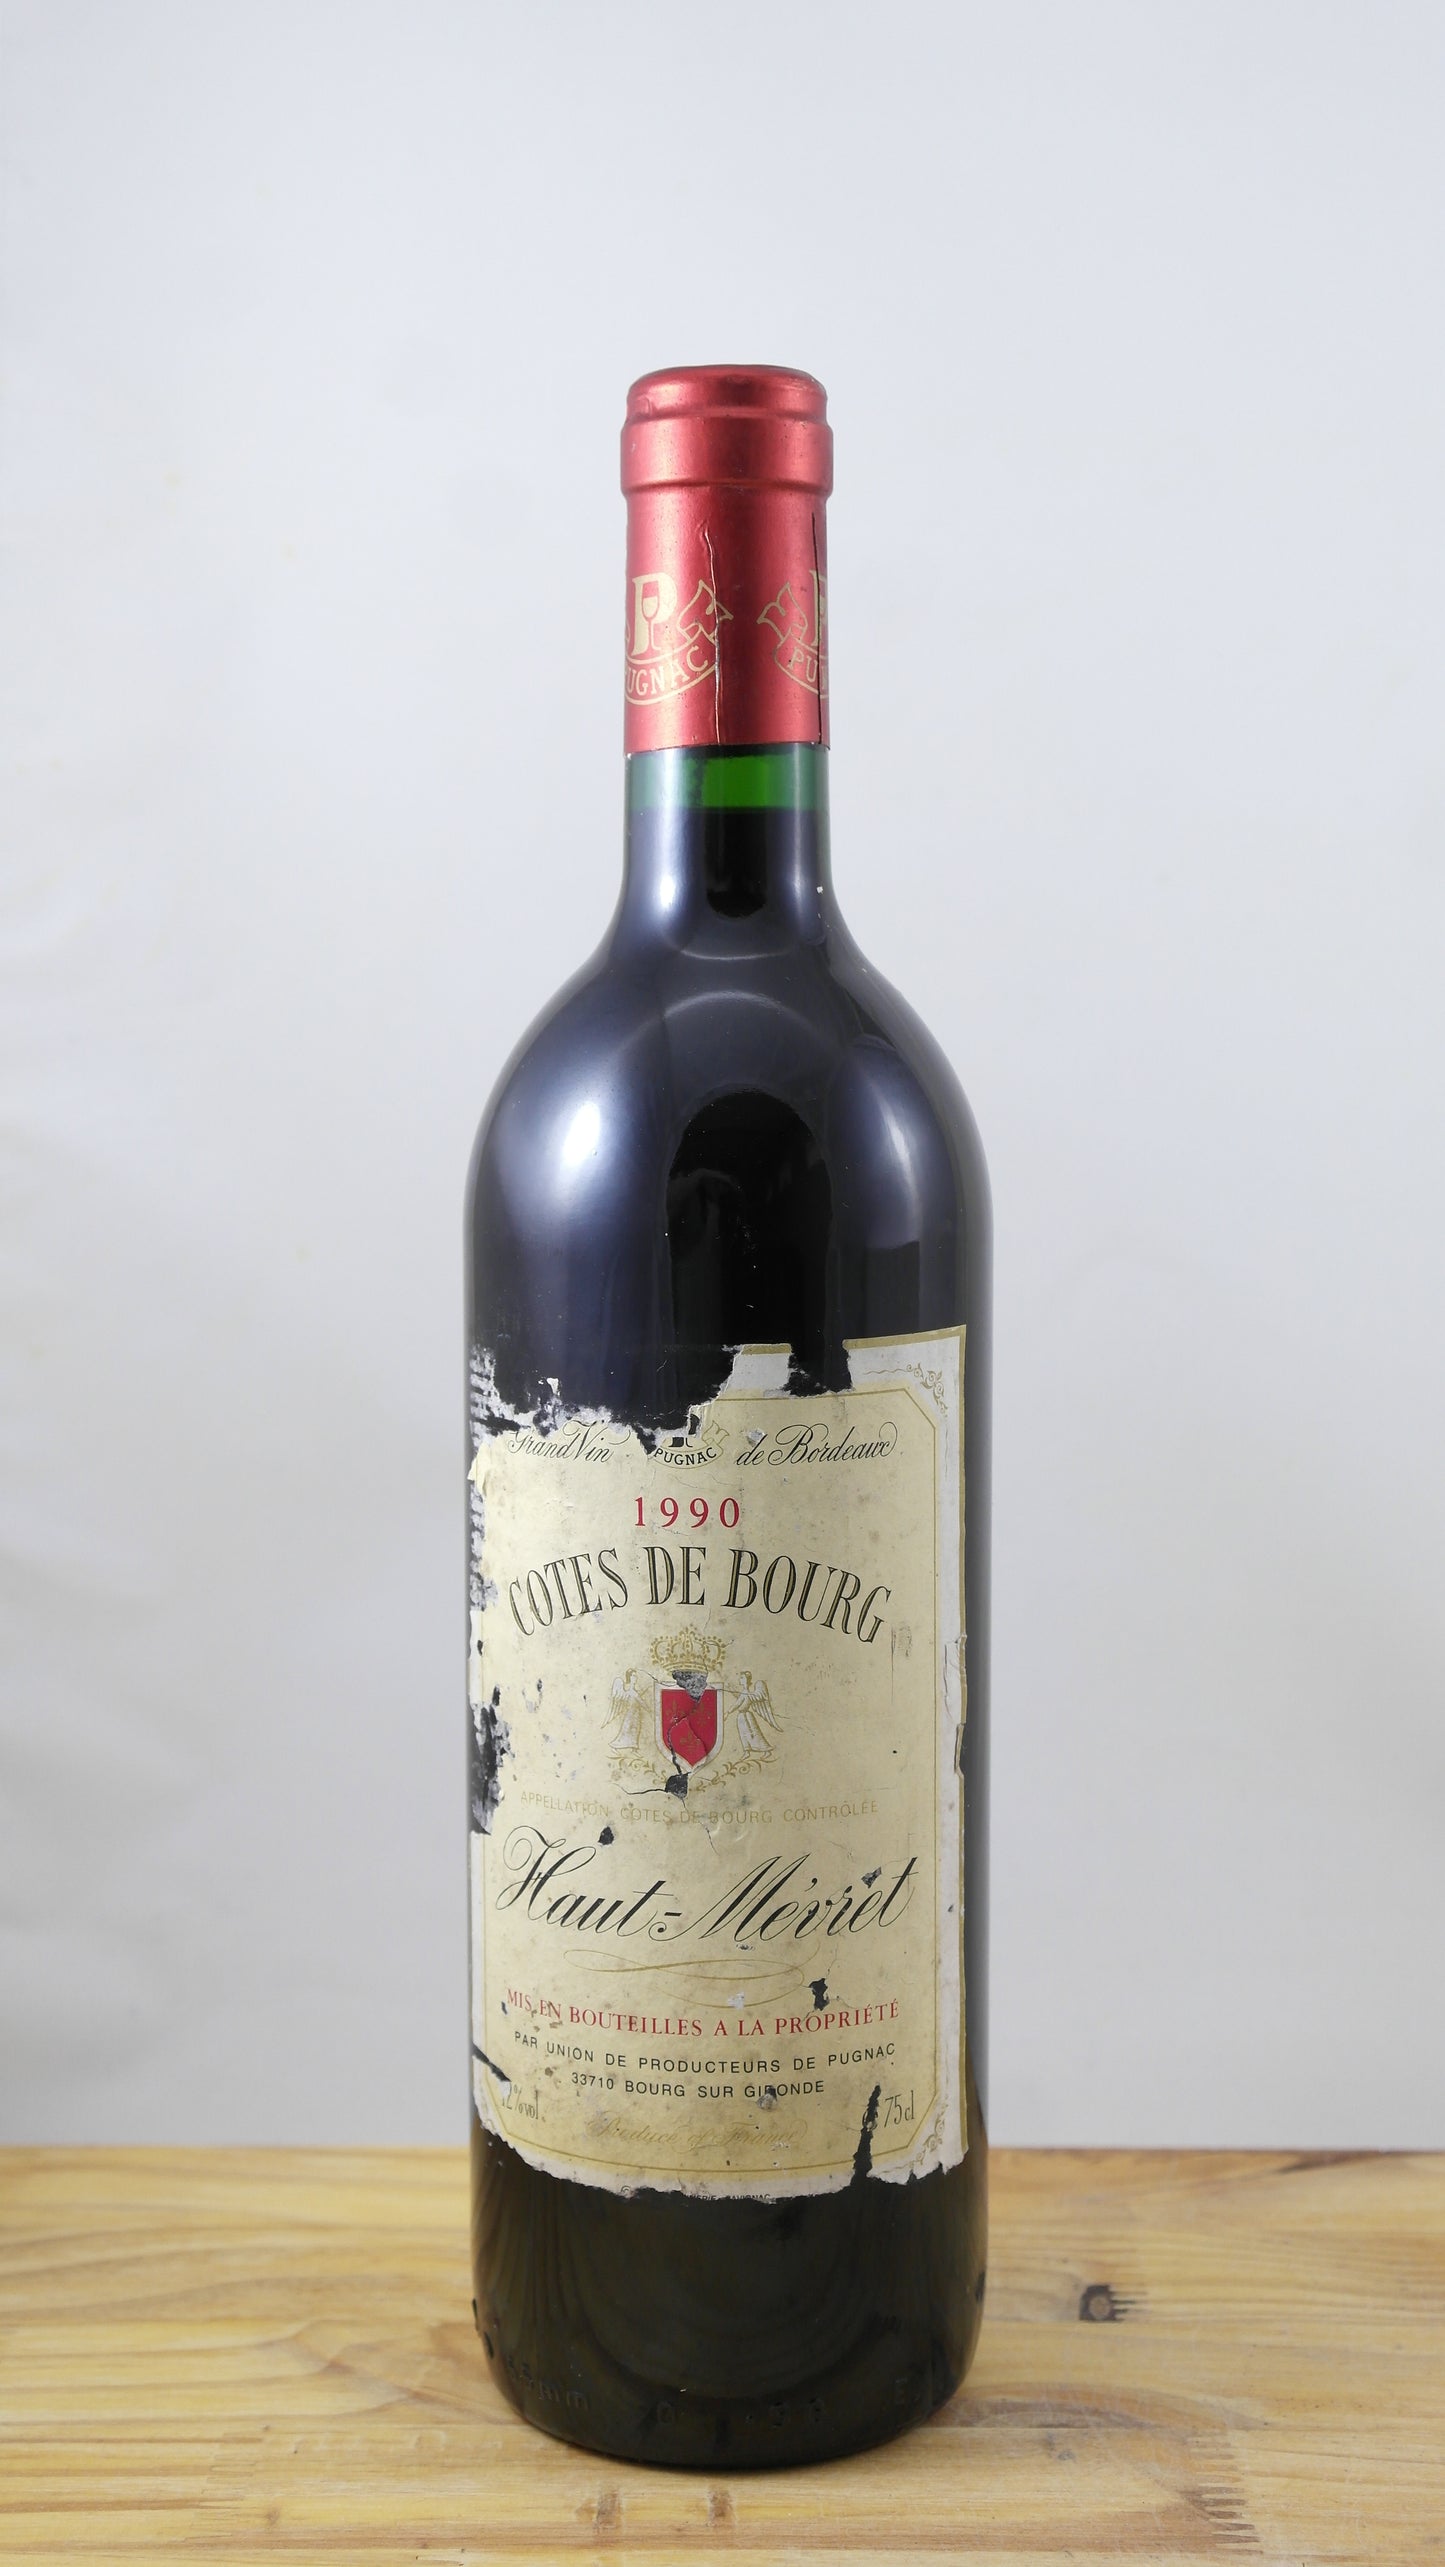 Côtes de Bourg Haut-Mevret Vin 1990